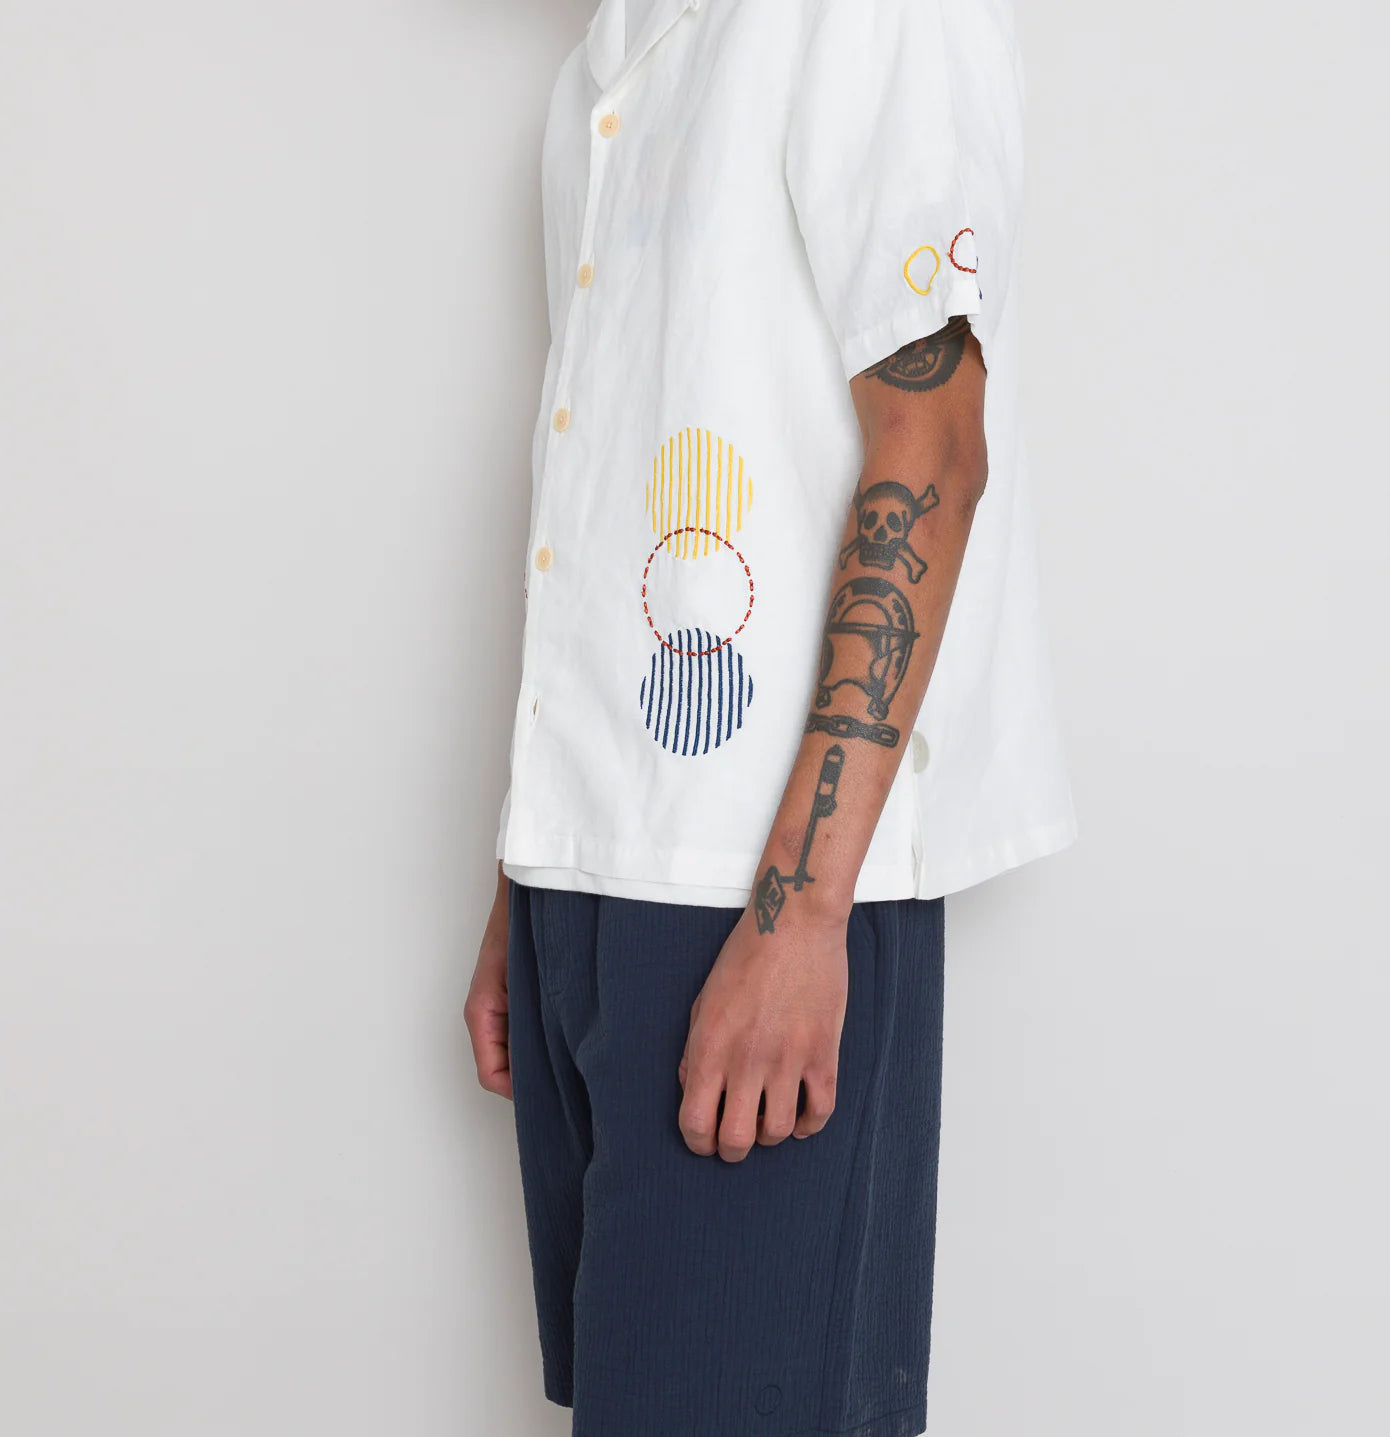 SS Soft Collar Shirt - Ecru Sun Embroidery DP